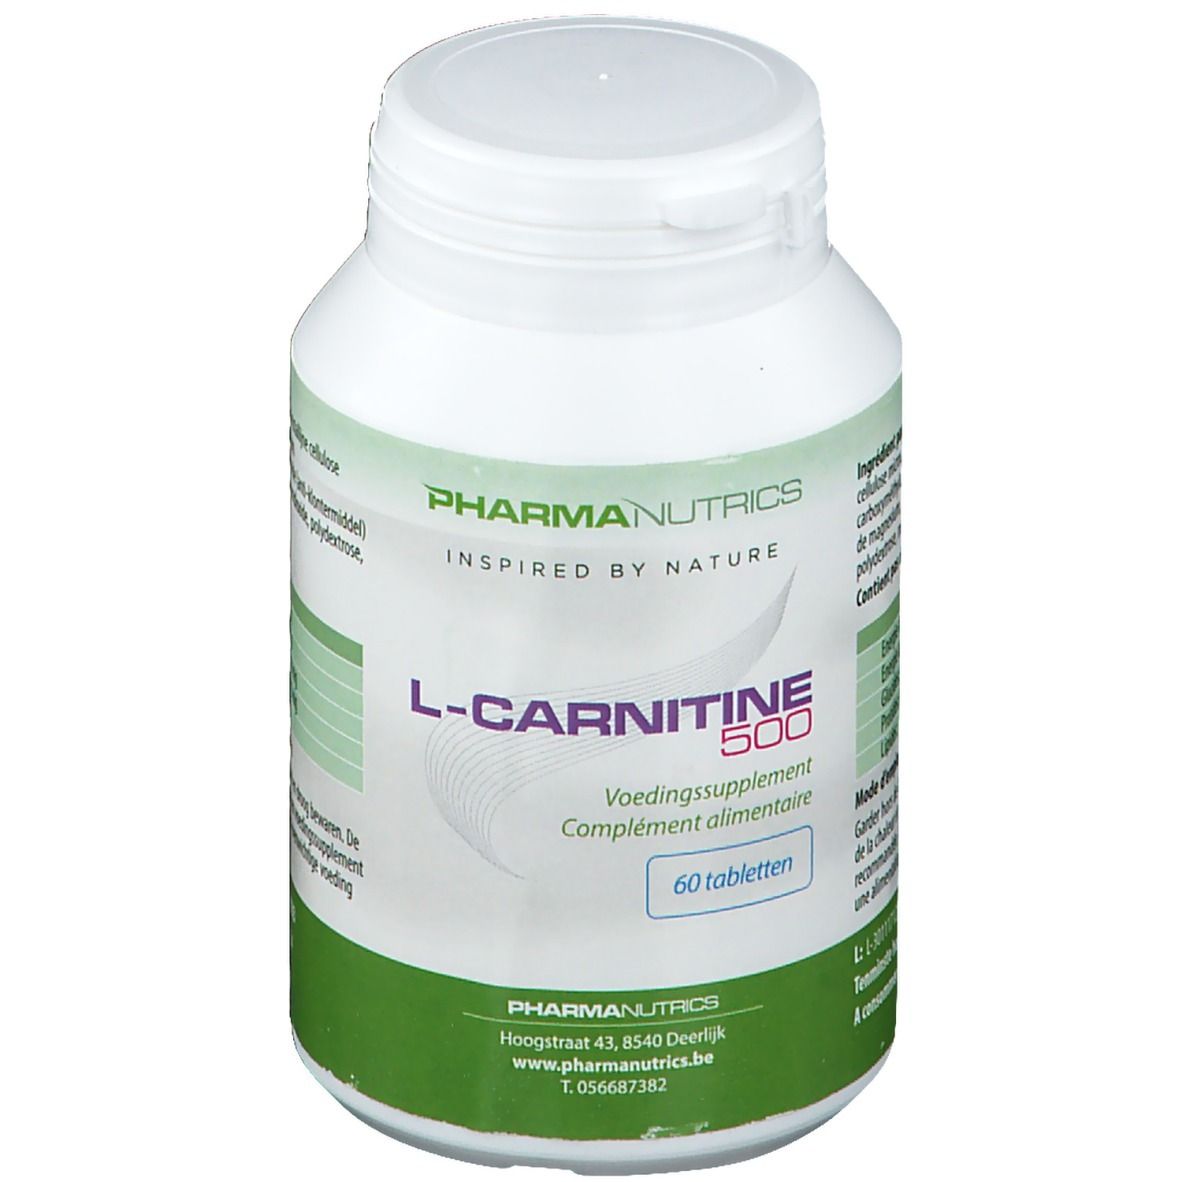 Image of Pharmanutrics L-Carnitin 500